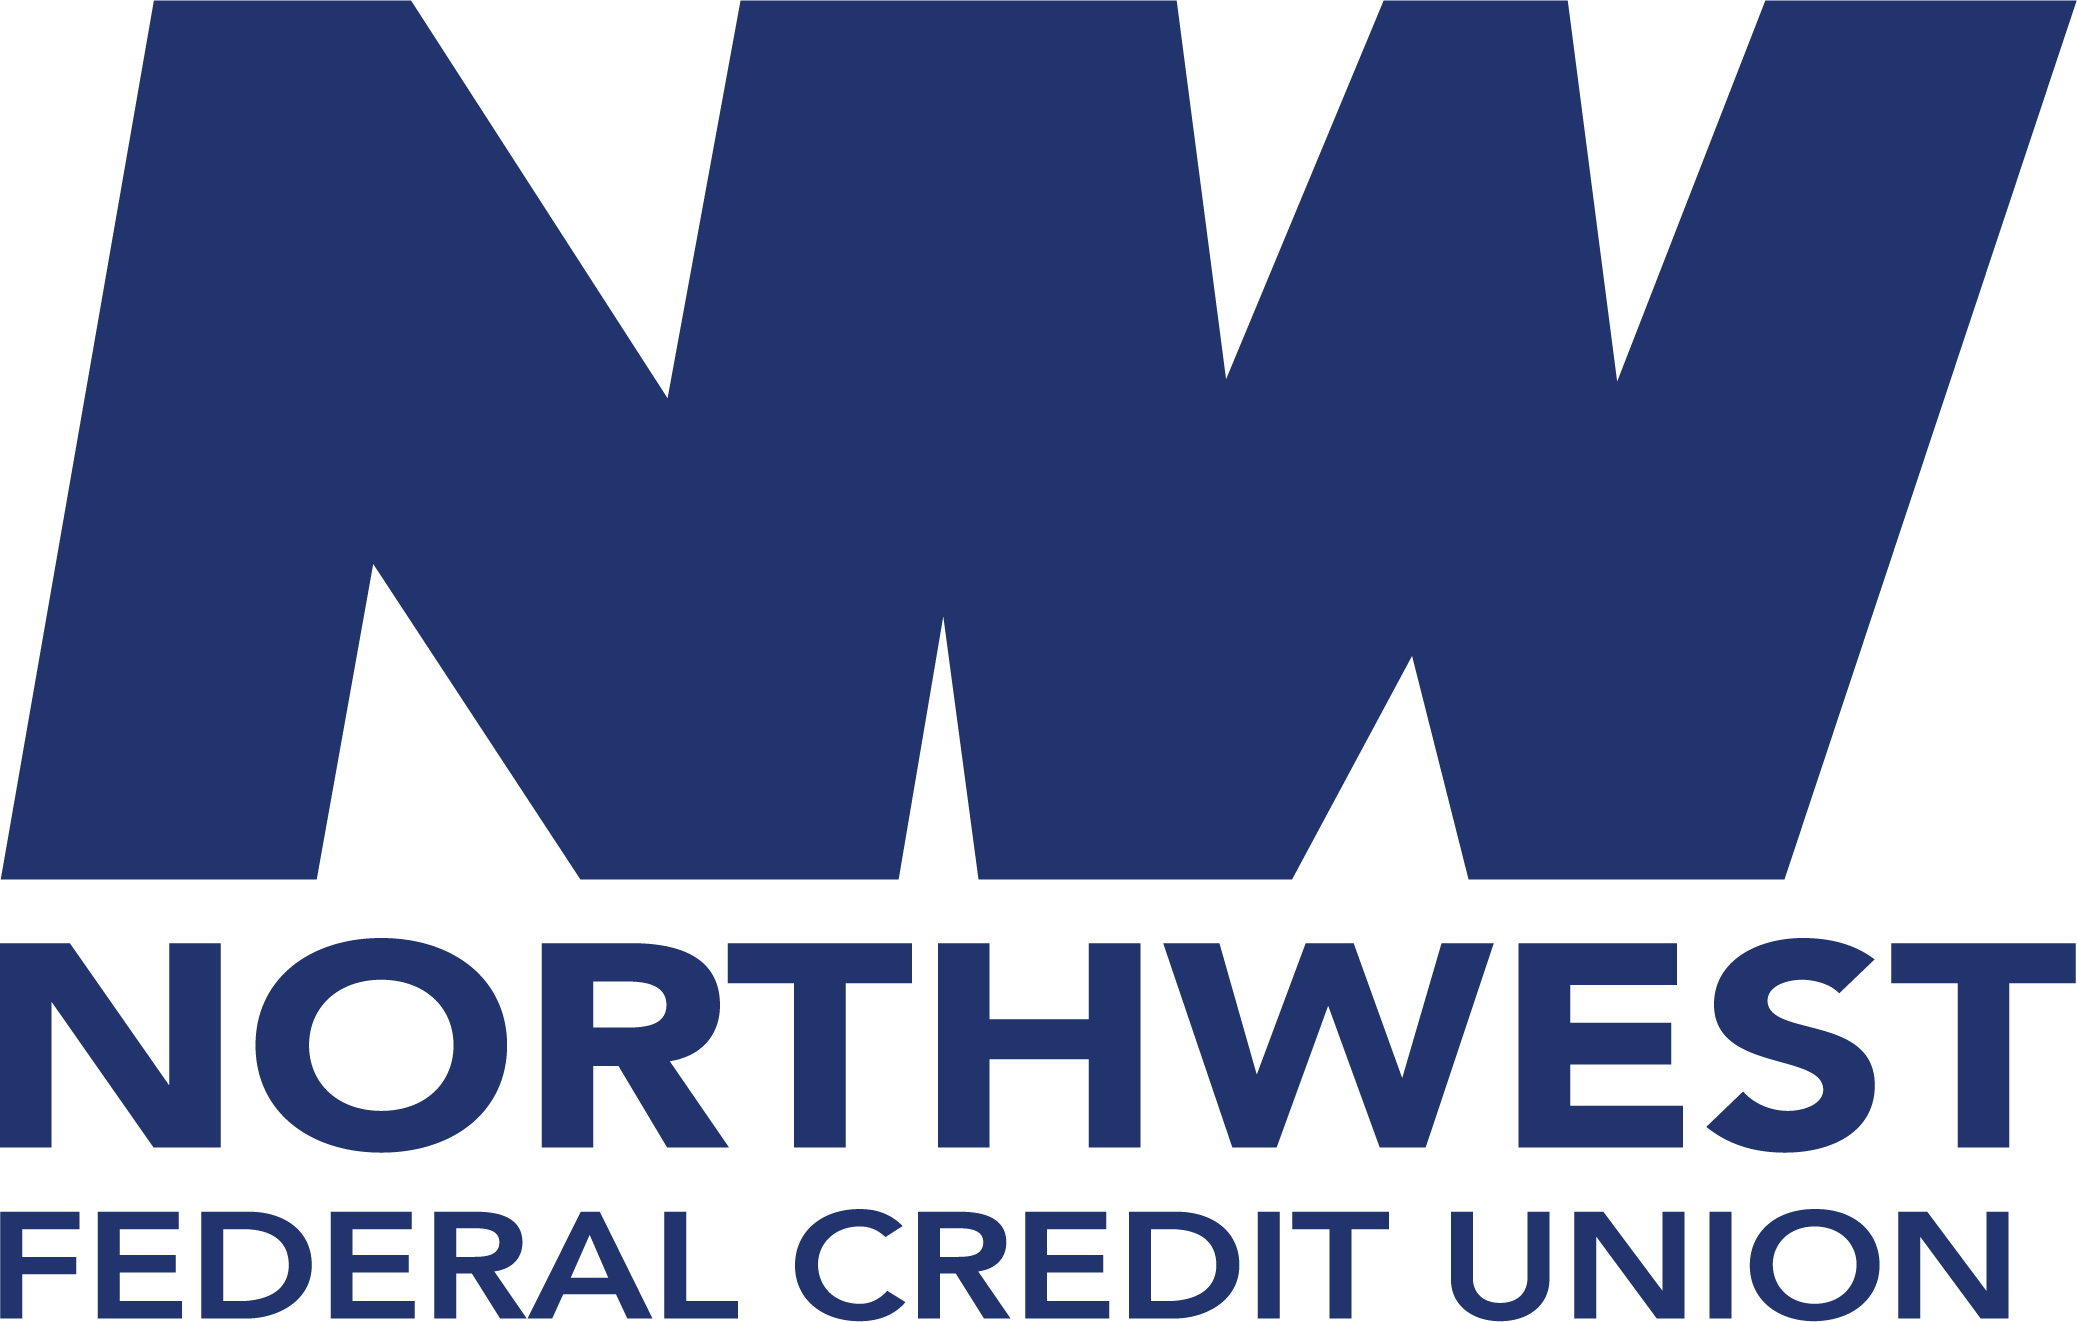 Northwest Federal Credit Union logo